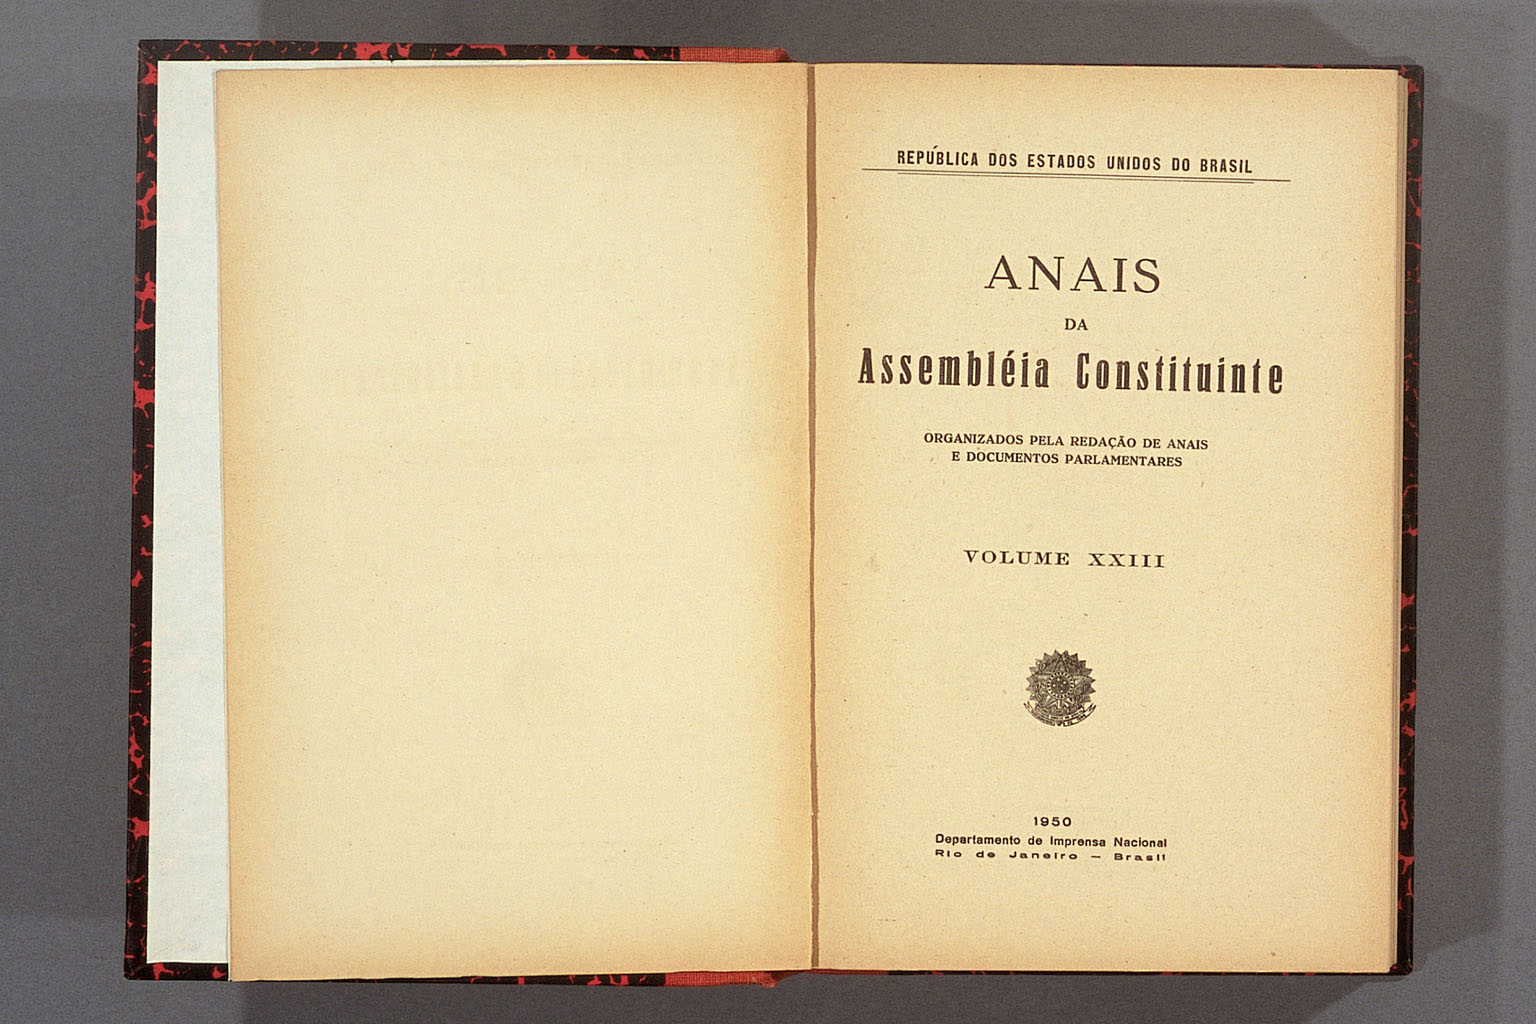 Imagem «Atas da Assembléia Constituinte»